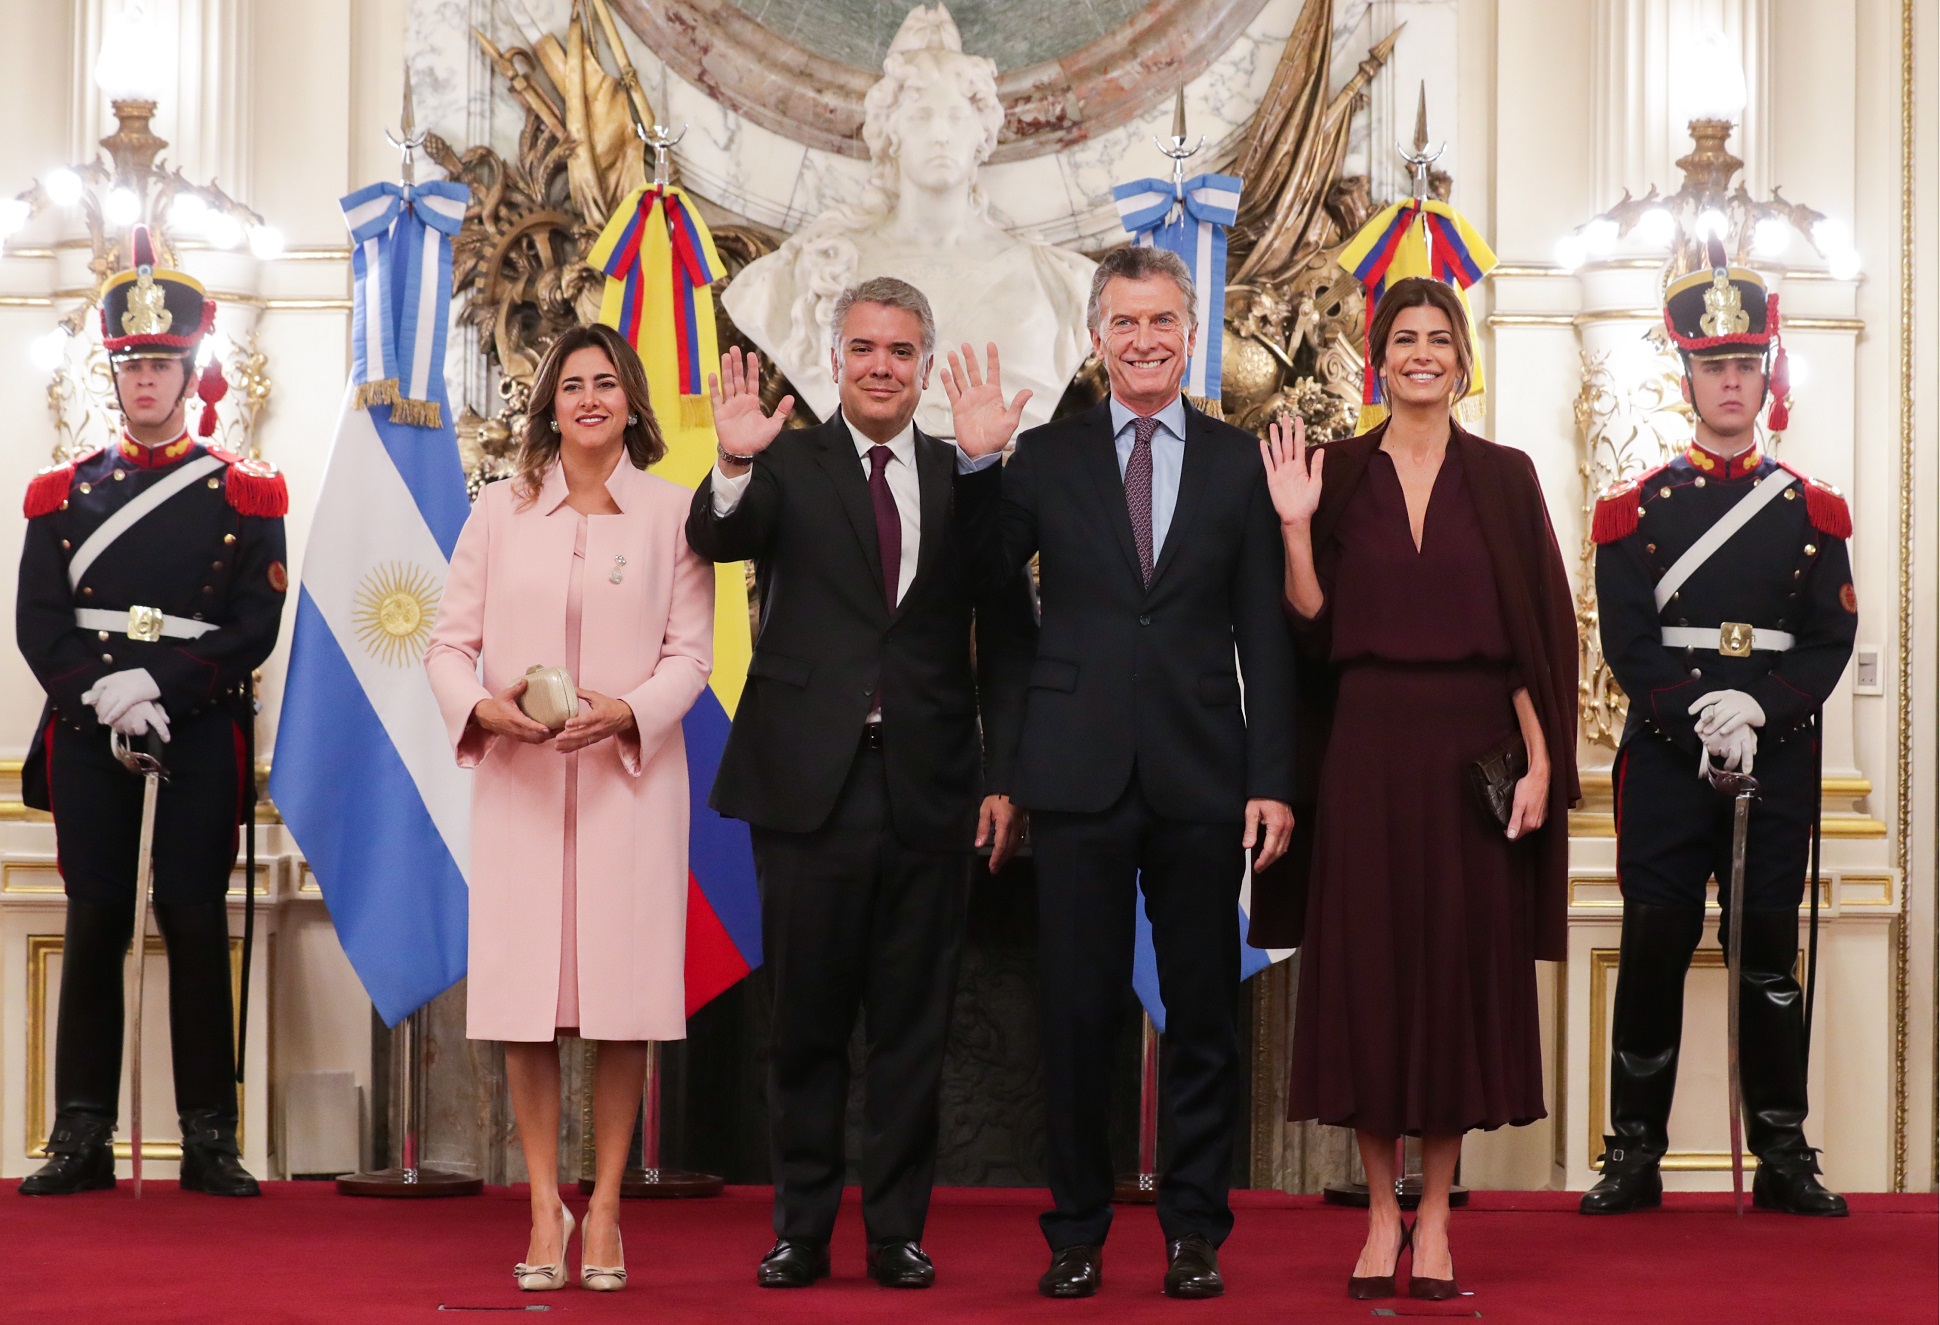 El presidente Mauricio Macri recibió a su par de Colombia